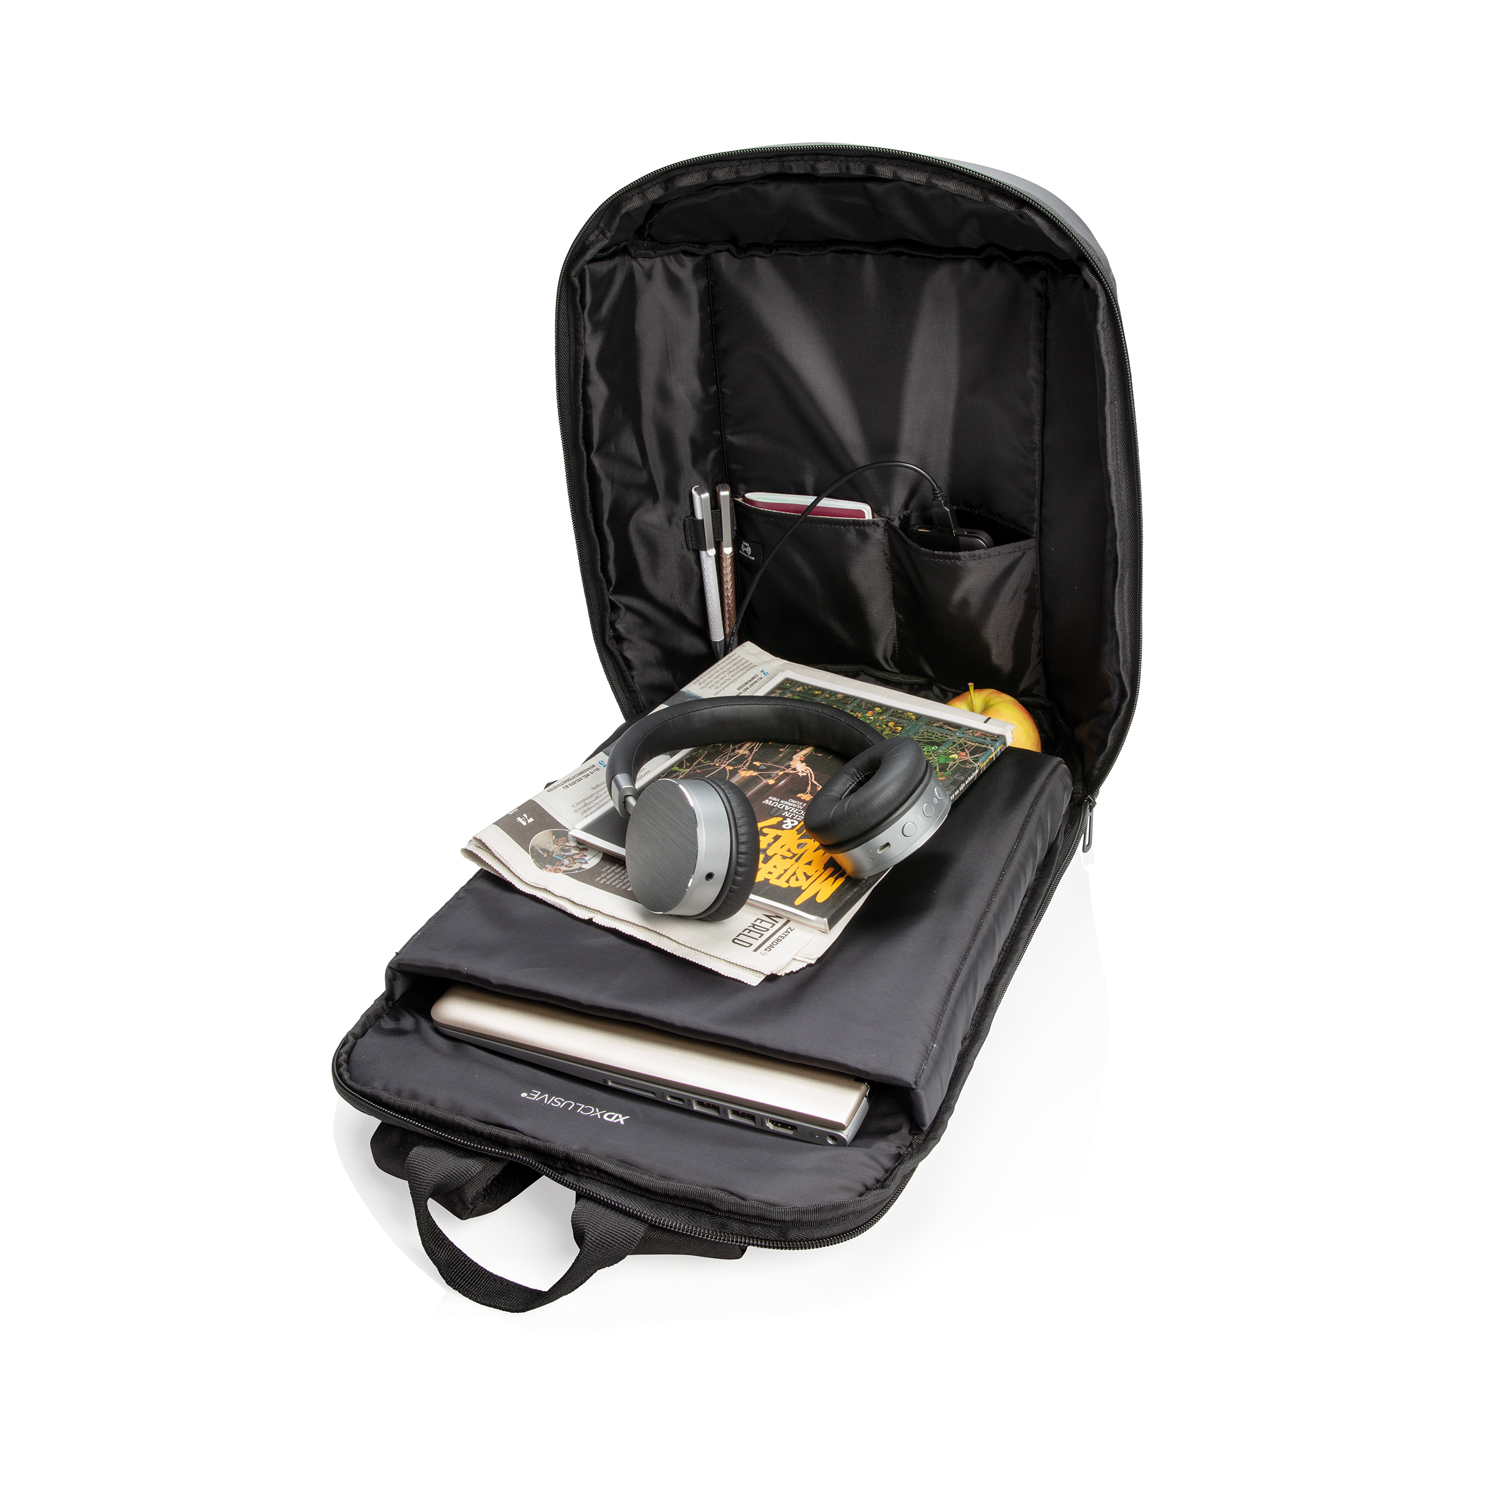 Антикражный рюкзак Madrid с разъемом USB и защитой RFID